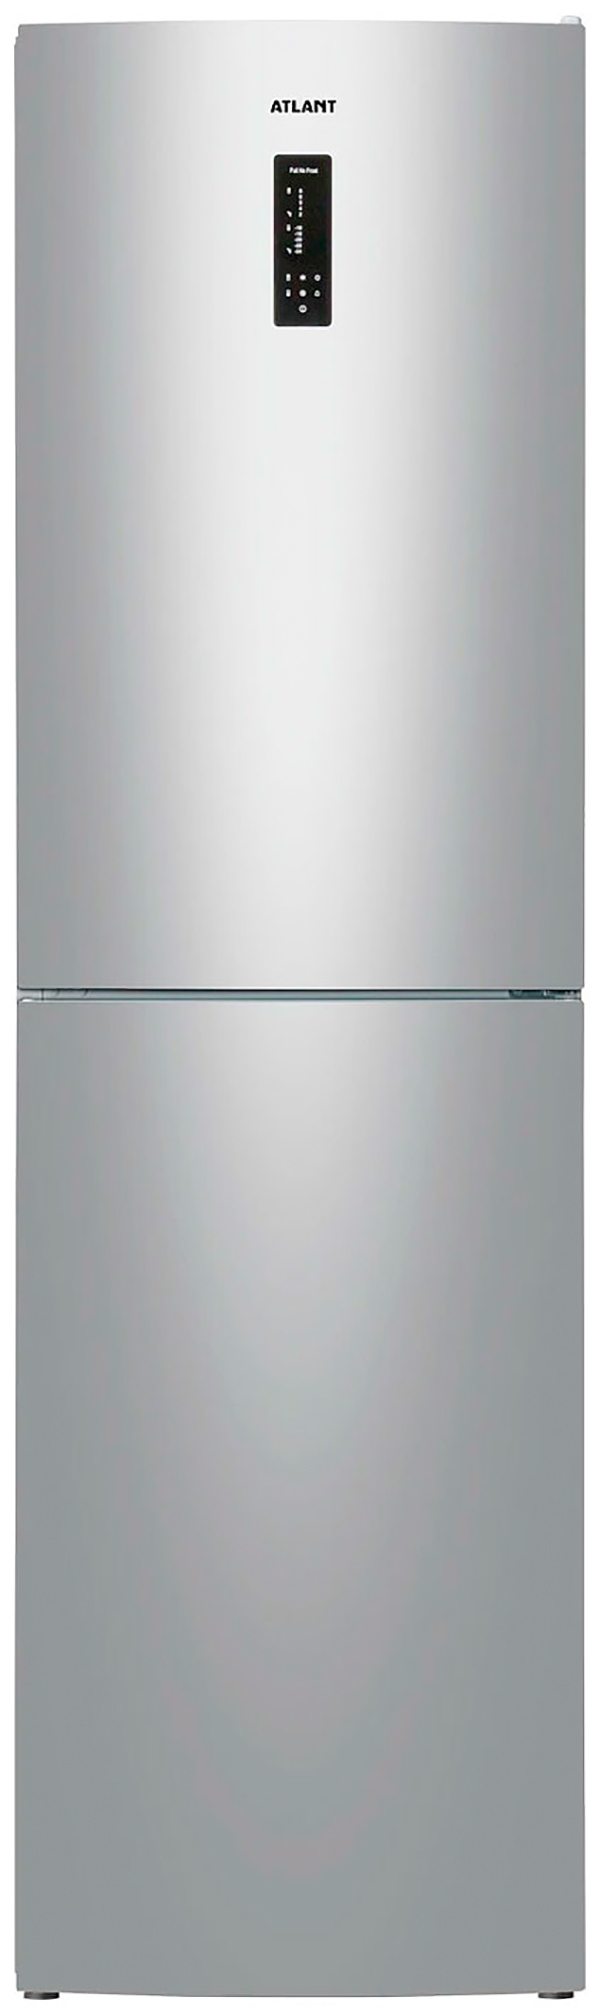 Холодильник ATLANT ХМ 4625-181 NL C серебристый холодильник atlant хм 4425 049 nd серебристый